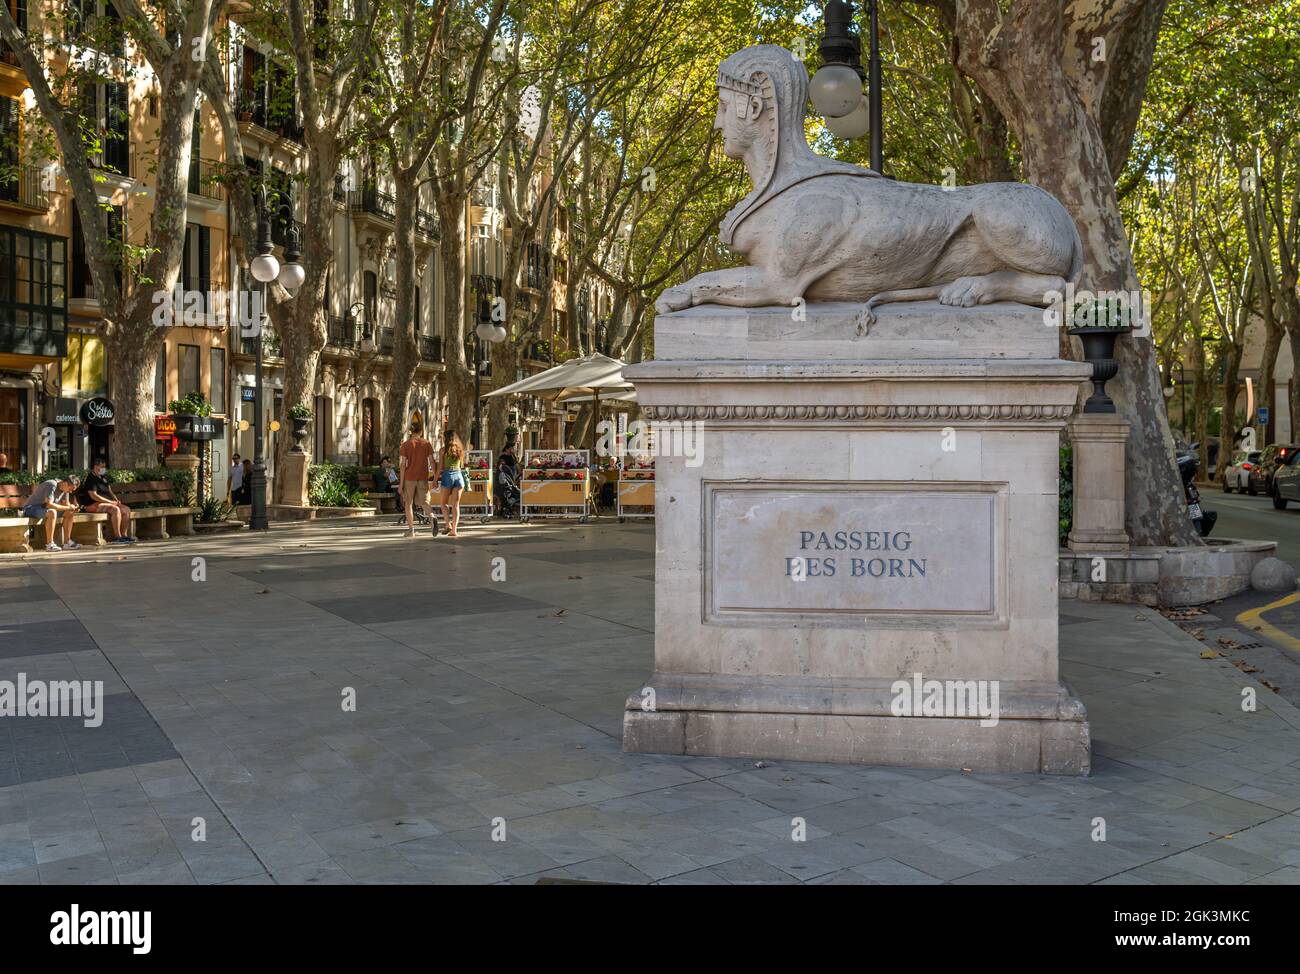 Palma di Maiorca, Spagna; settembre 10 2021: Scultura di sfinge di pietra e lapide che annuncia l'ingresso al Passeig del Borne. Nel backgroun Foto Stock